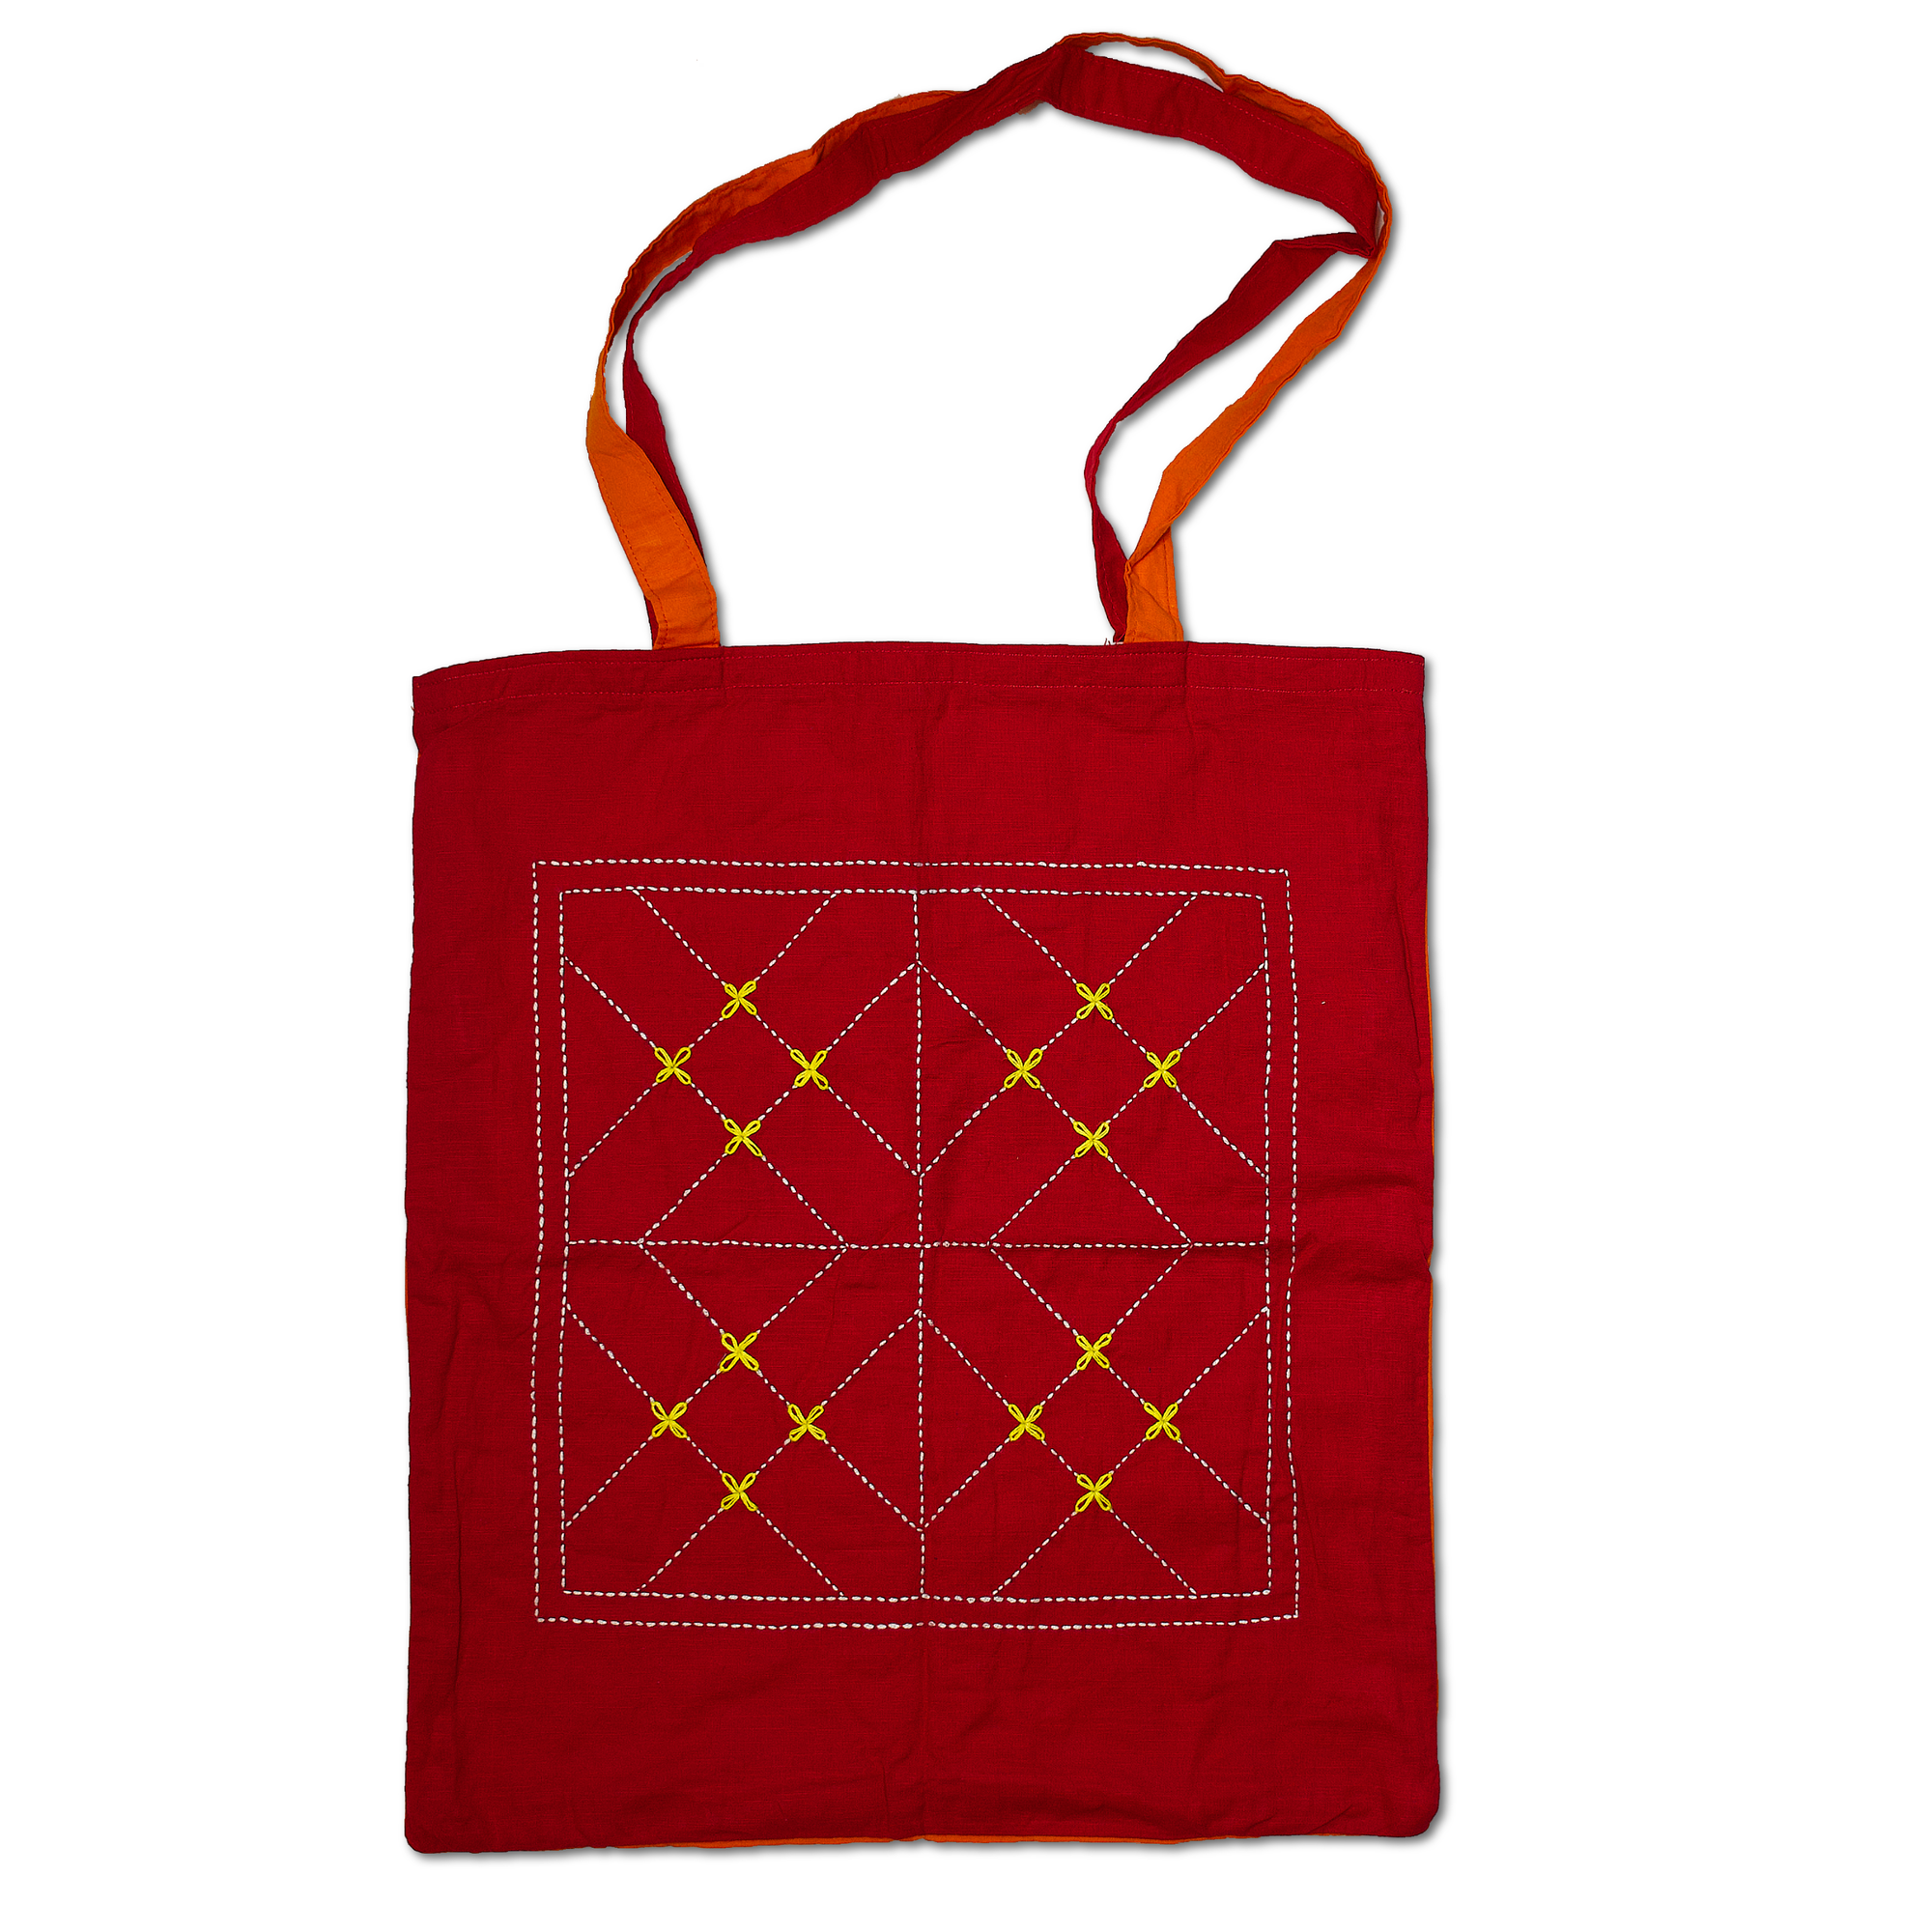 Tote Bags - Kurigram (geometric) Design